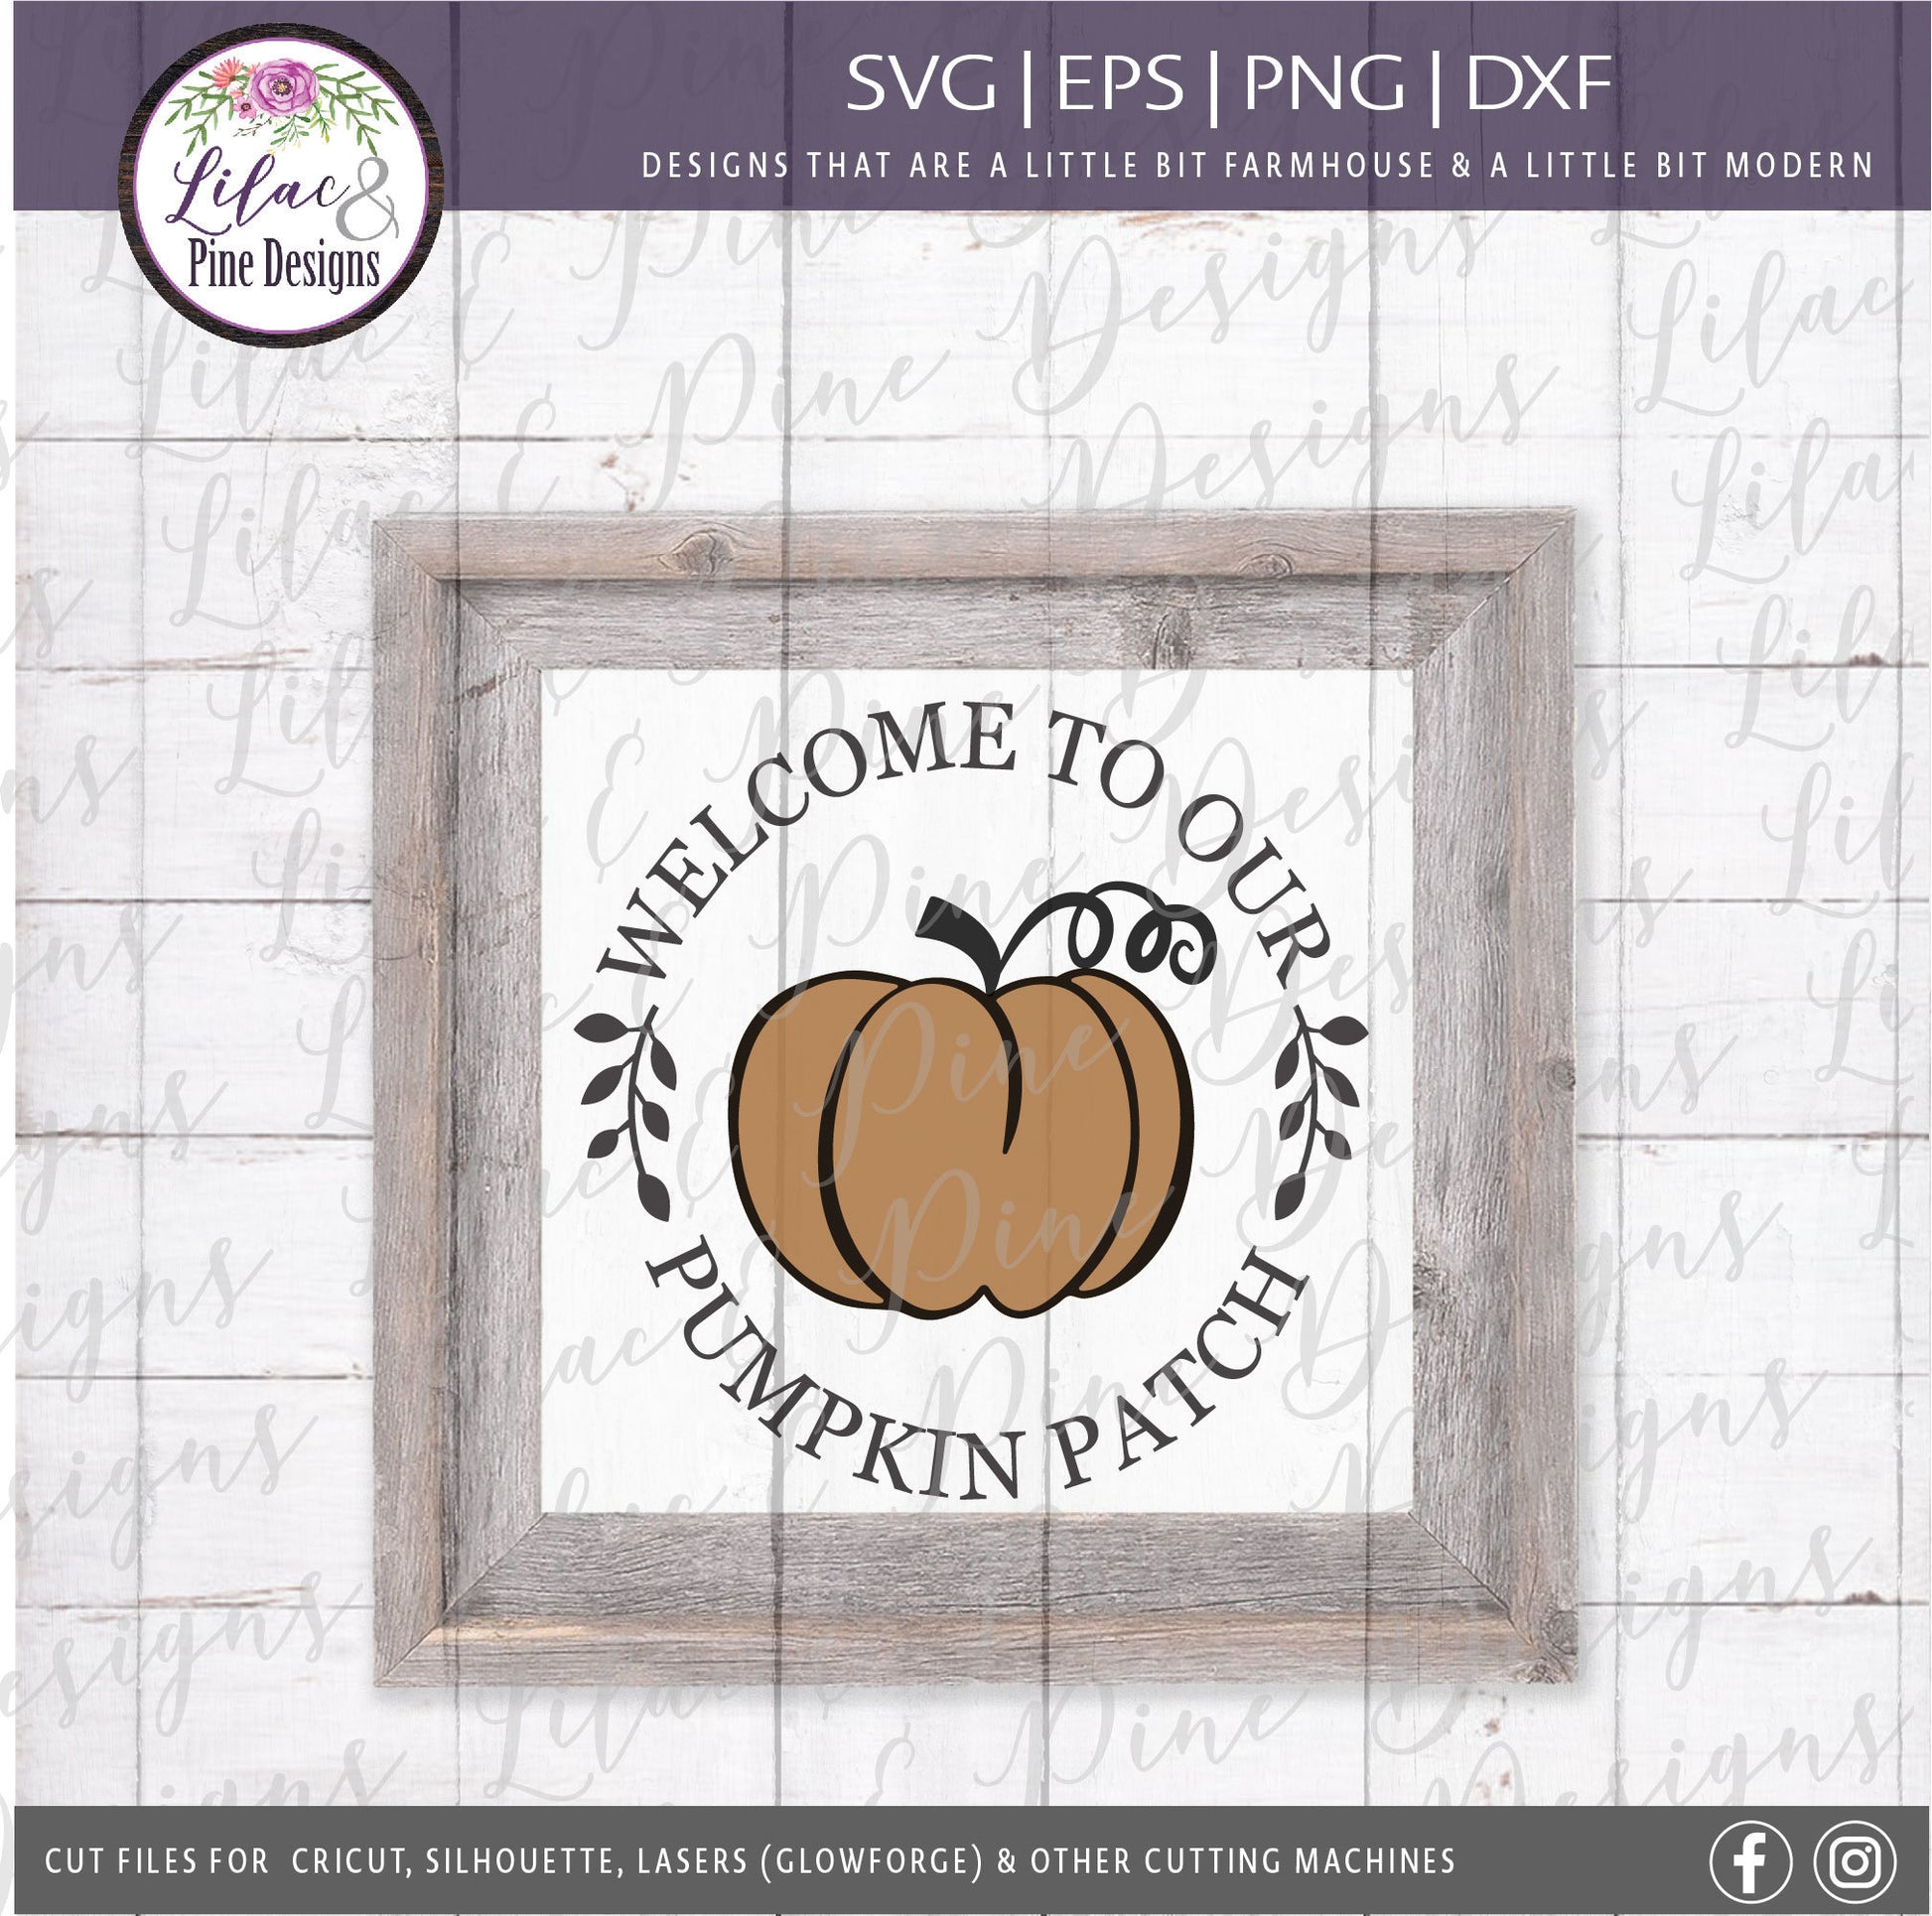 Pumpkin patch SVG, Welcome Pumpkin SVG, Fall Pumpkin SVG, Fall Decor Svg, Modern Farmhouse decor, Pumpkin round Svg, fall sign, pumpkin sign